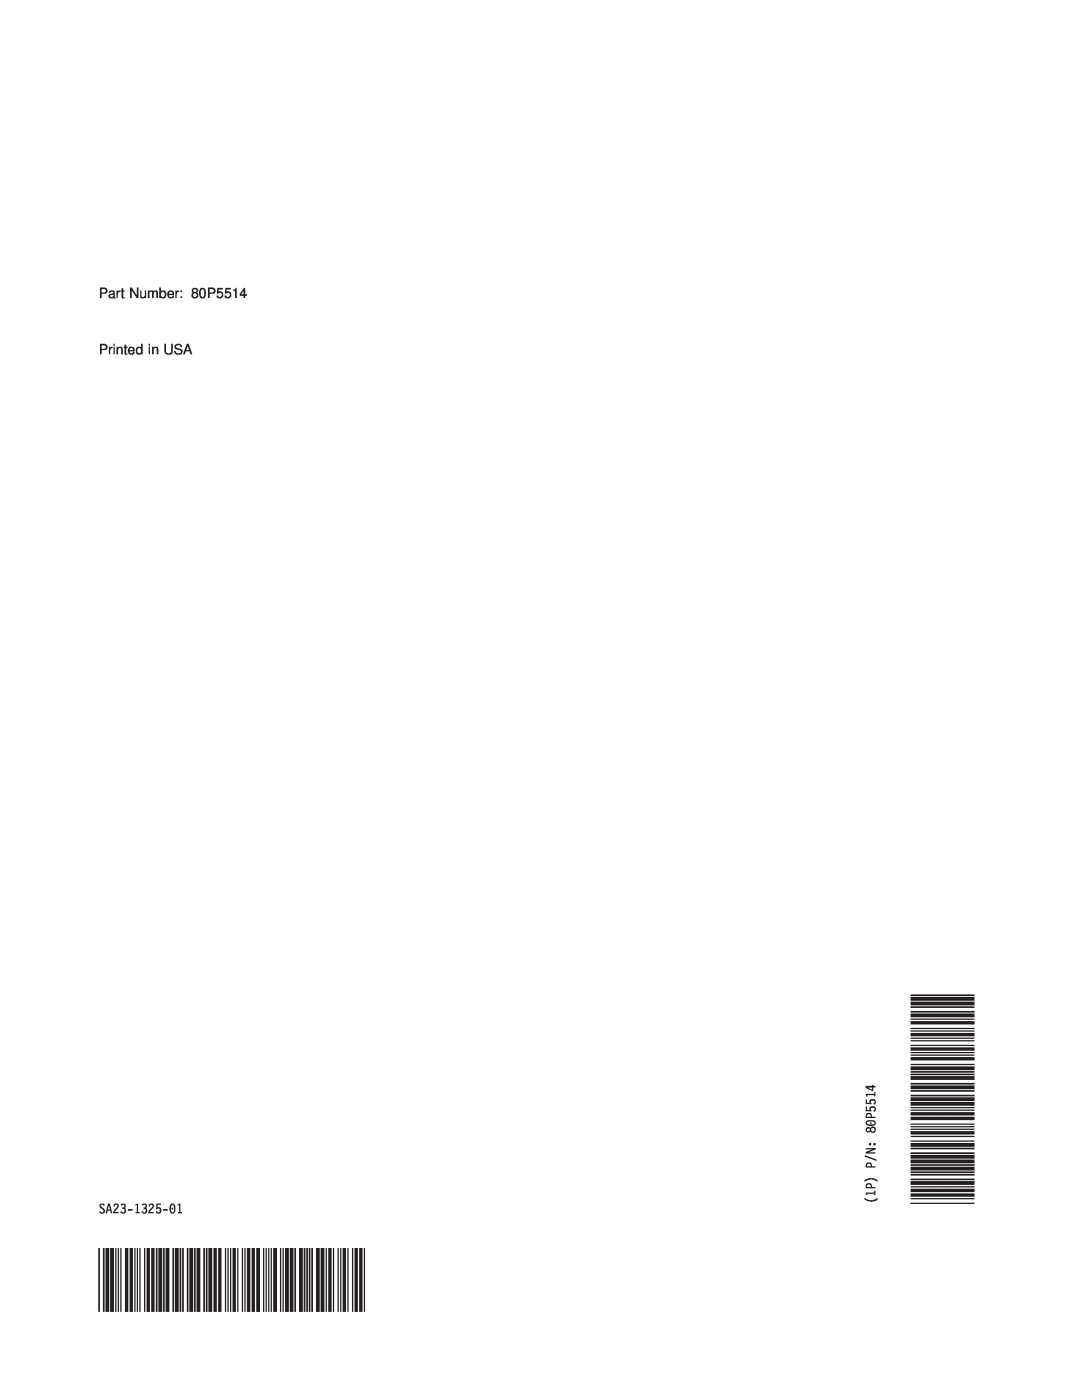 IBM SA23-1325-01 manual Part Number 80P5514 Printed in USA, 1P P/N 80P5514 